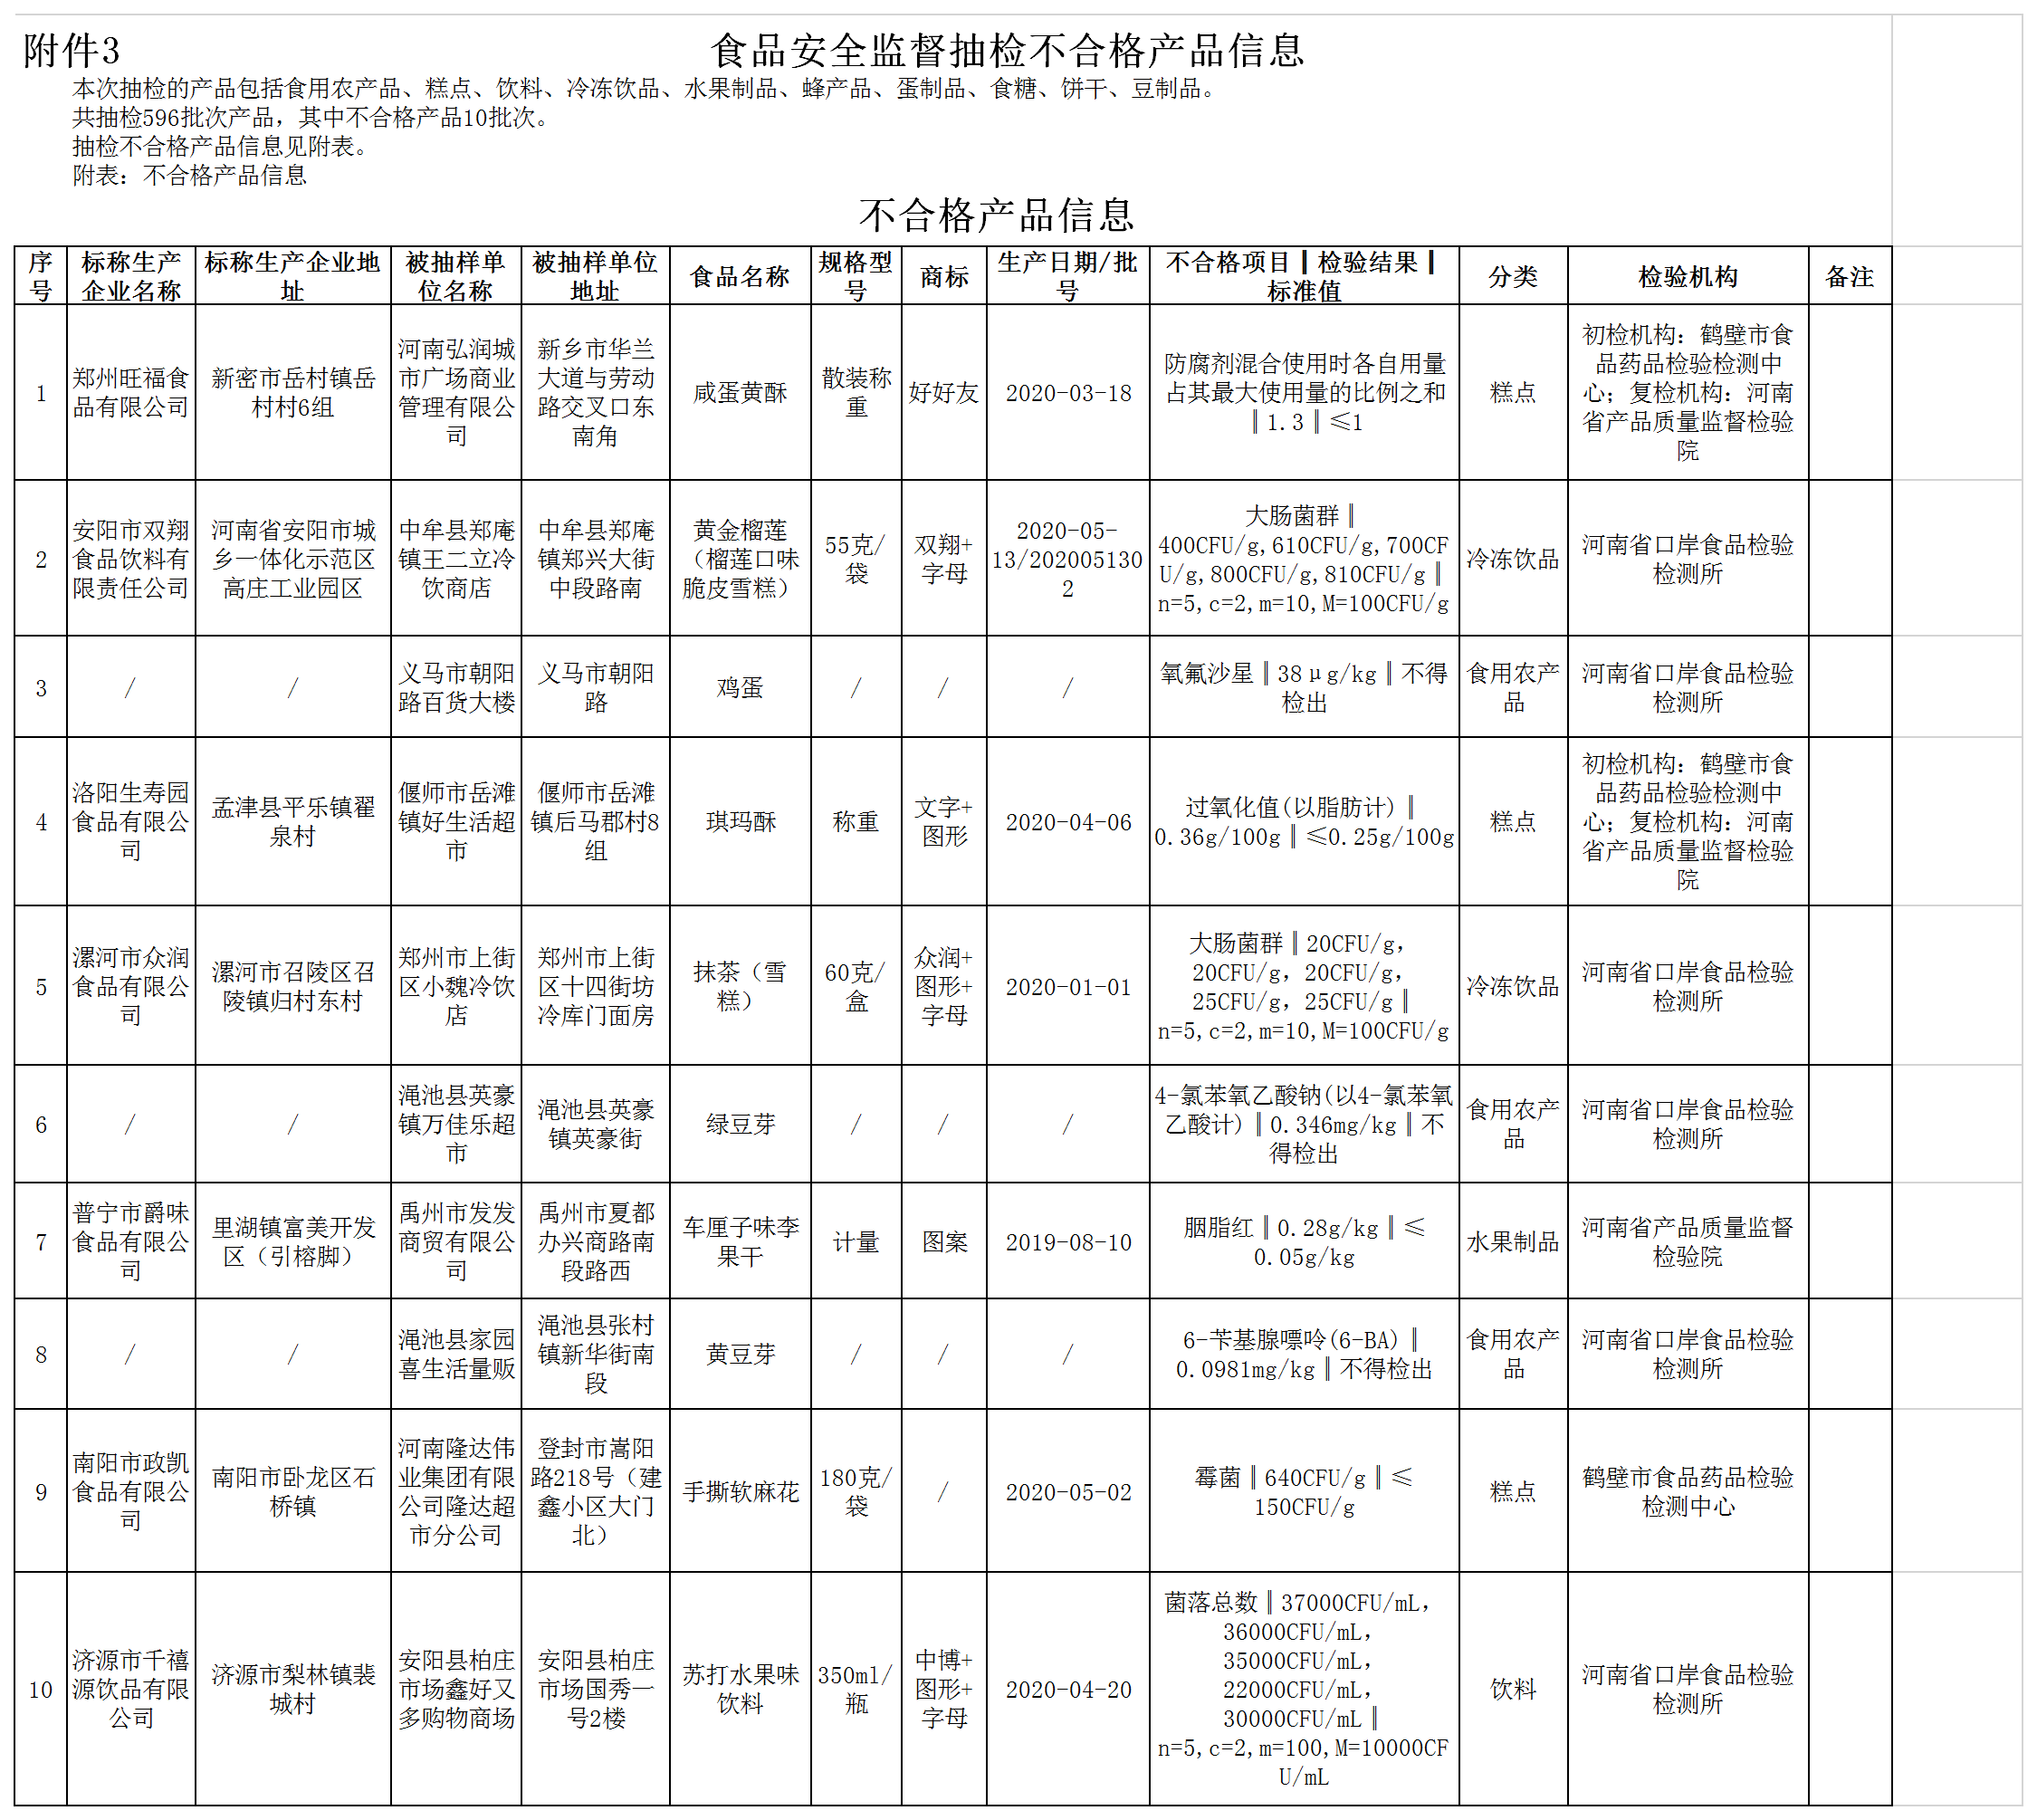 河南通告10批次食品不合格 郑州旺福、洛阳生寿园、漯河众润等食品公司产品上榜